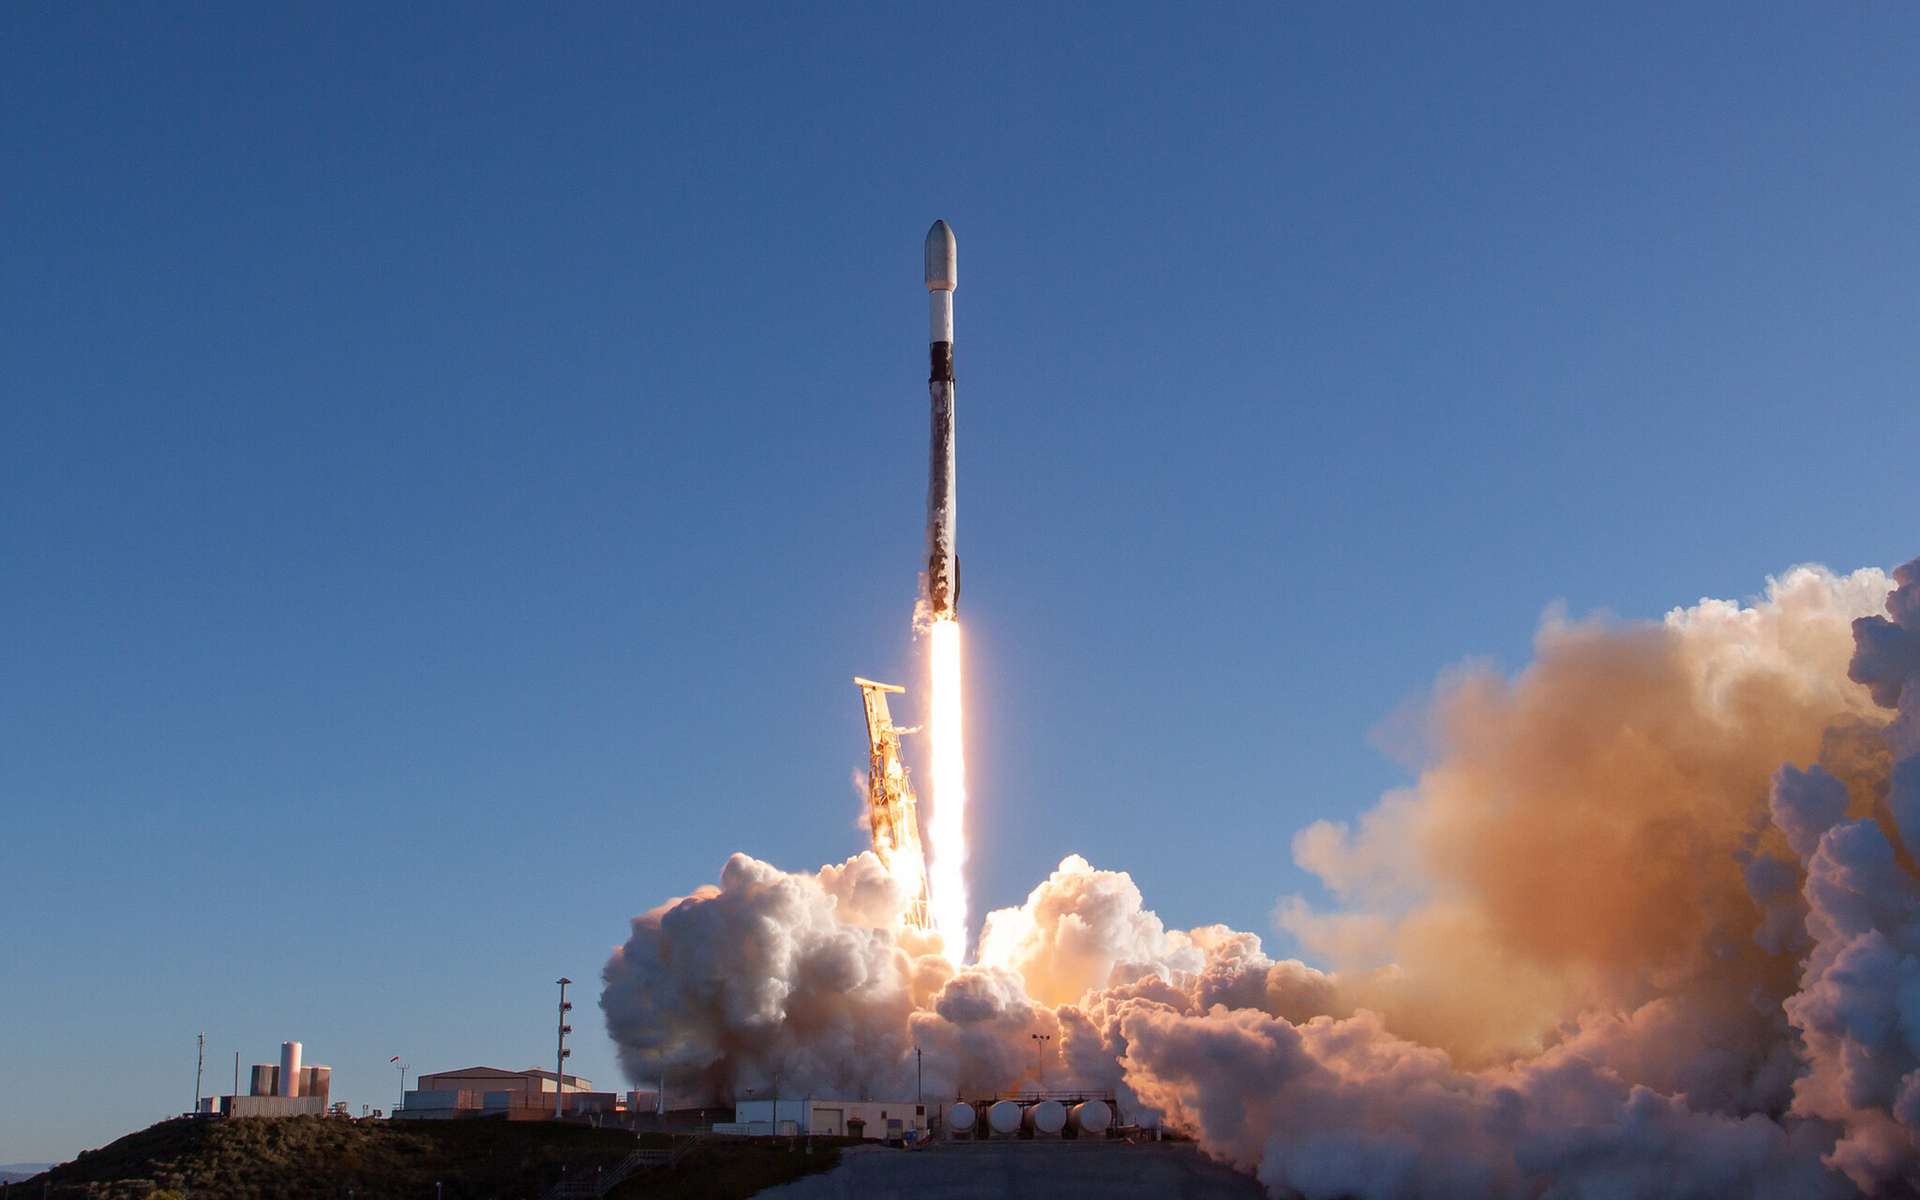 SpaceX aligne les succès avec Falcon 9 : 200 vols réussis pour la fusée la plus fiable du monde